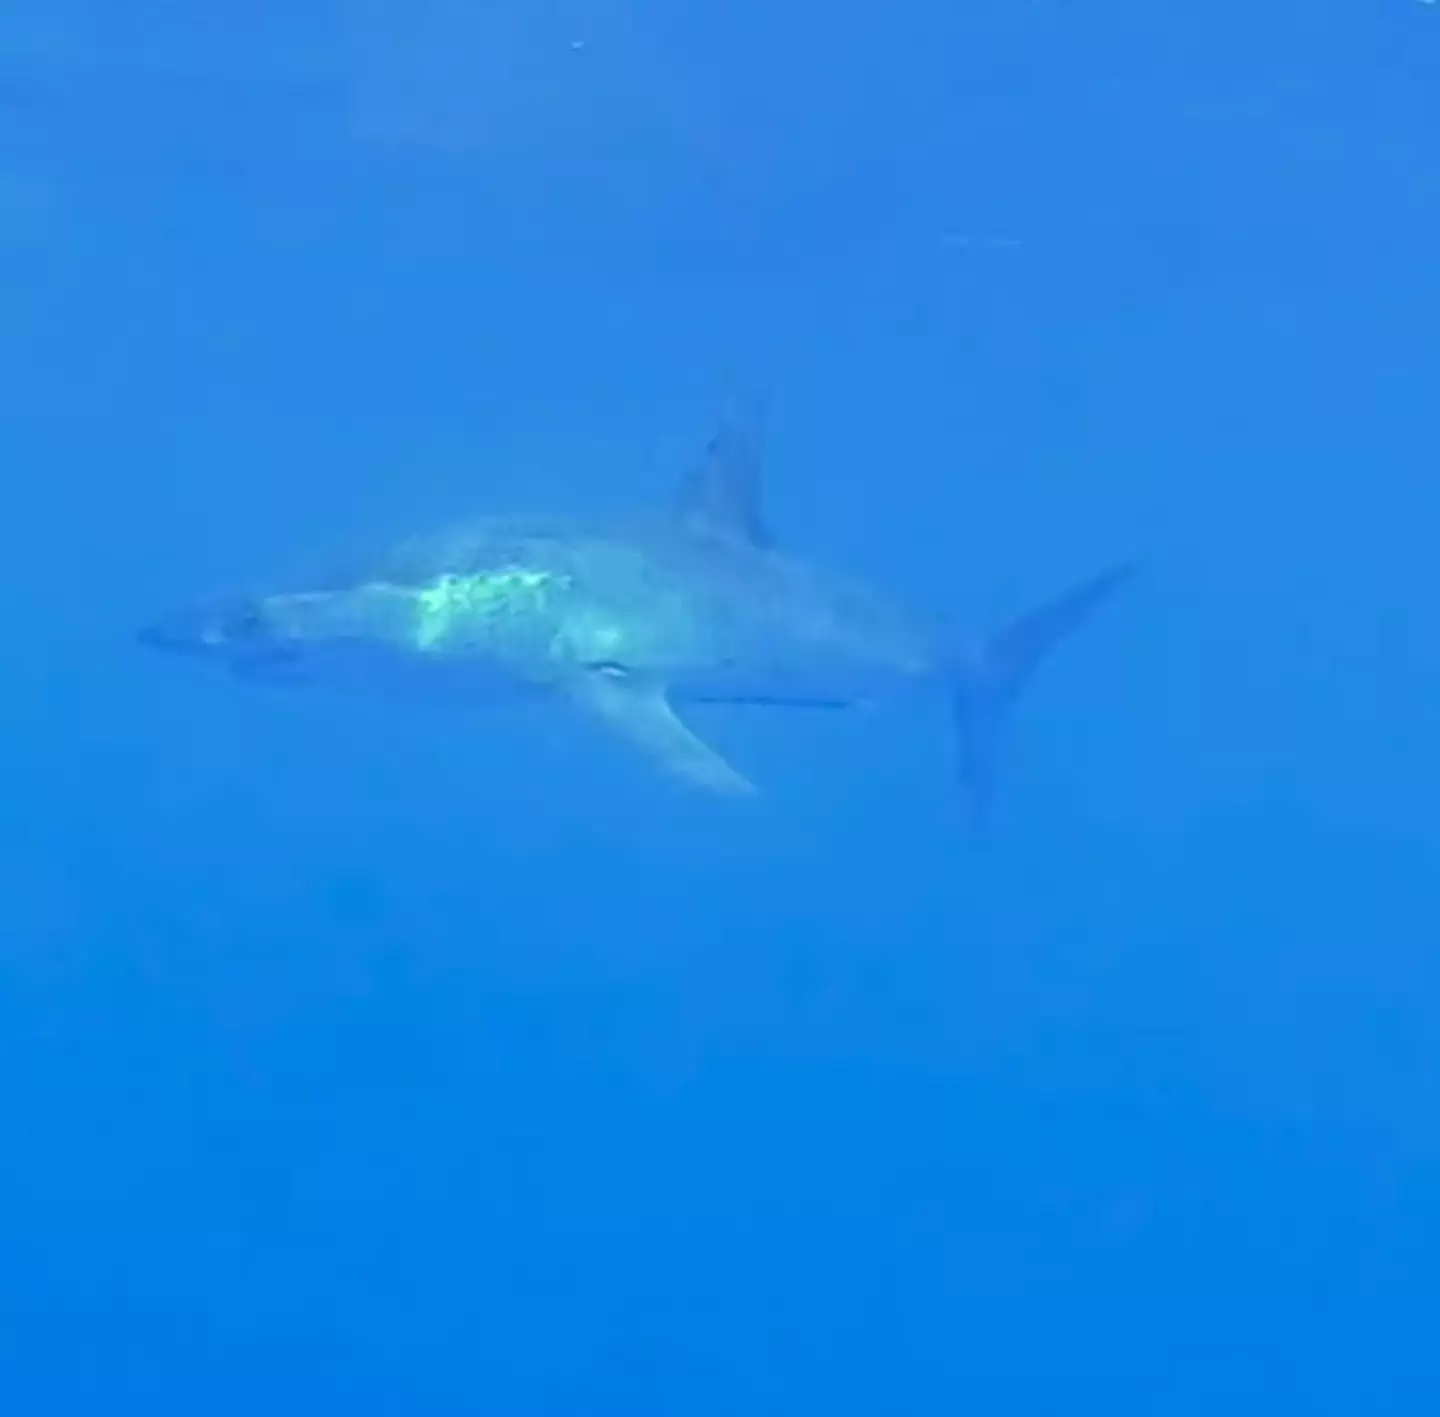 The great mako shark can reach speeds of 45mph.